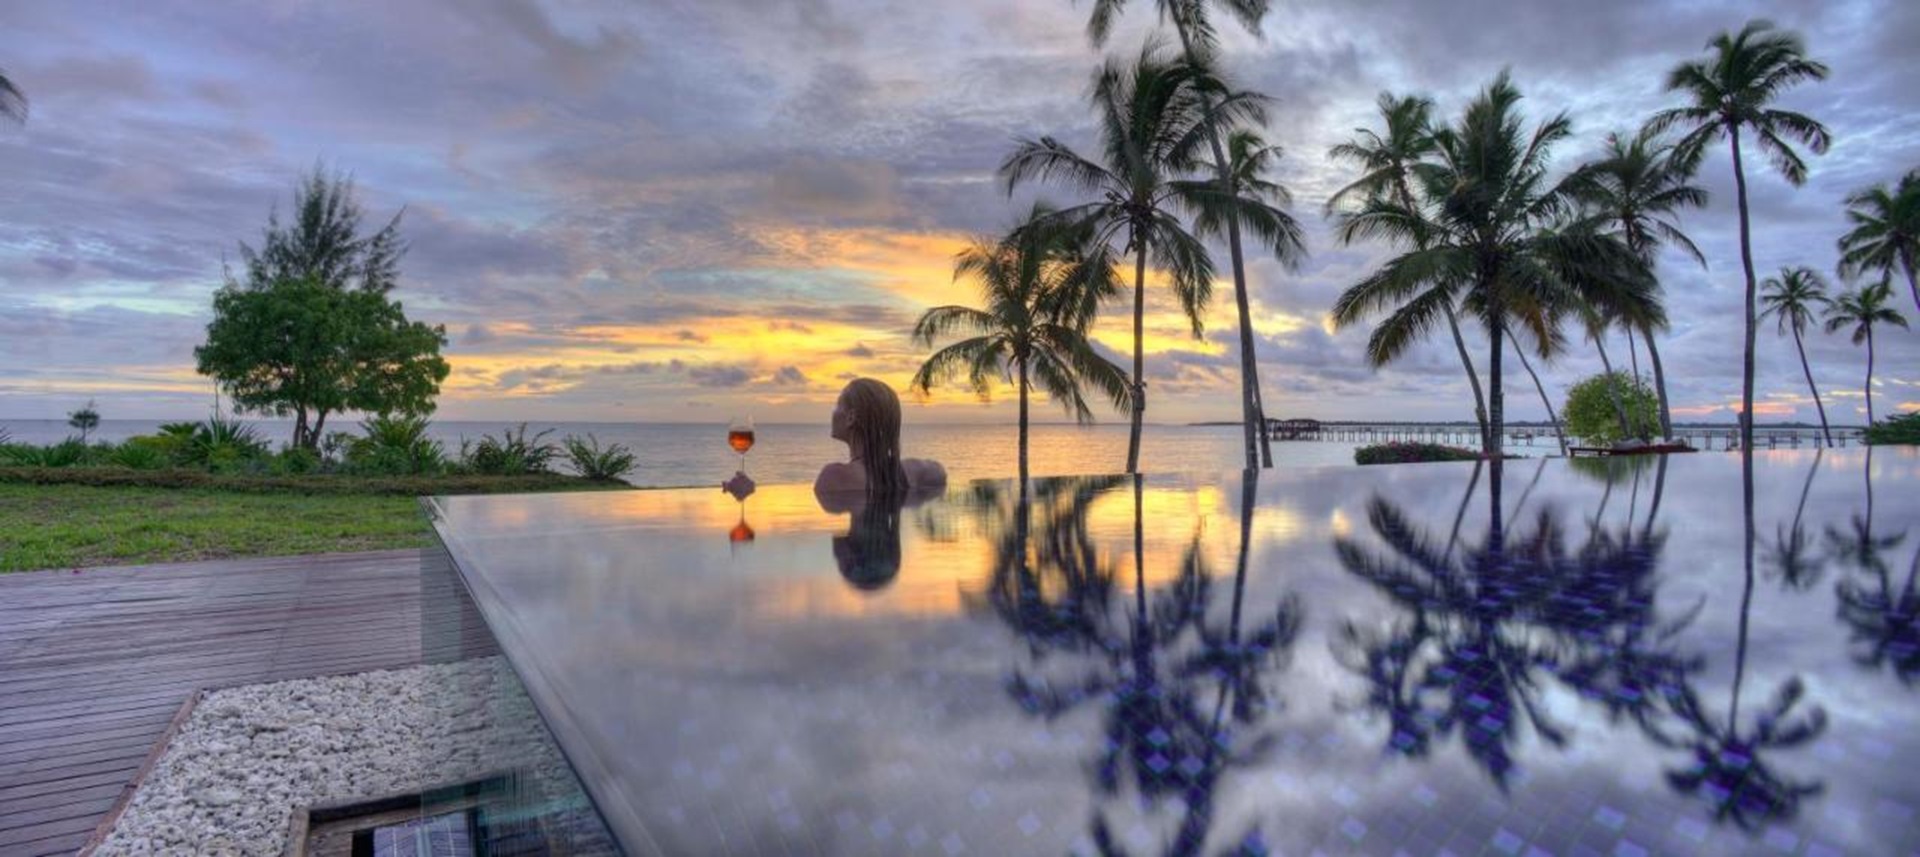 Luxury Garden Pool Villa at the Residence Zanzibar!